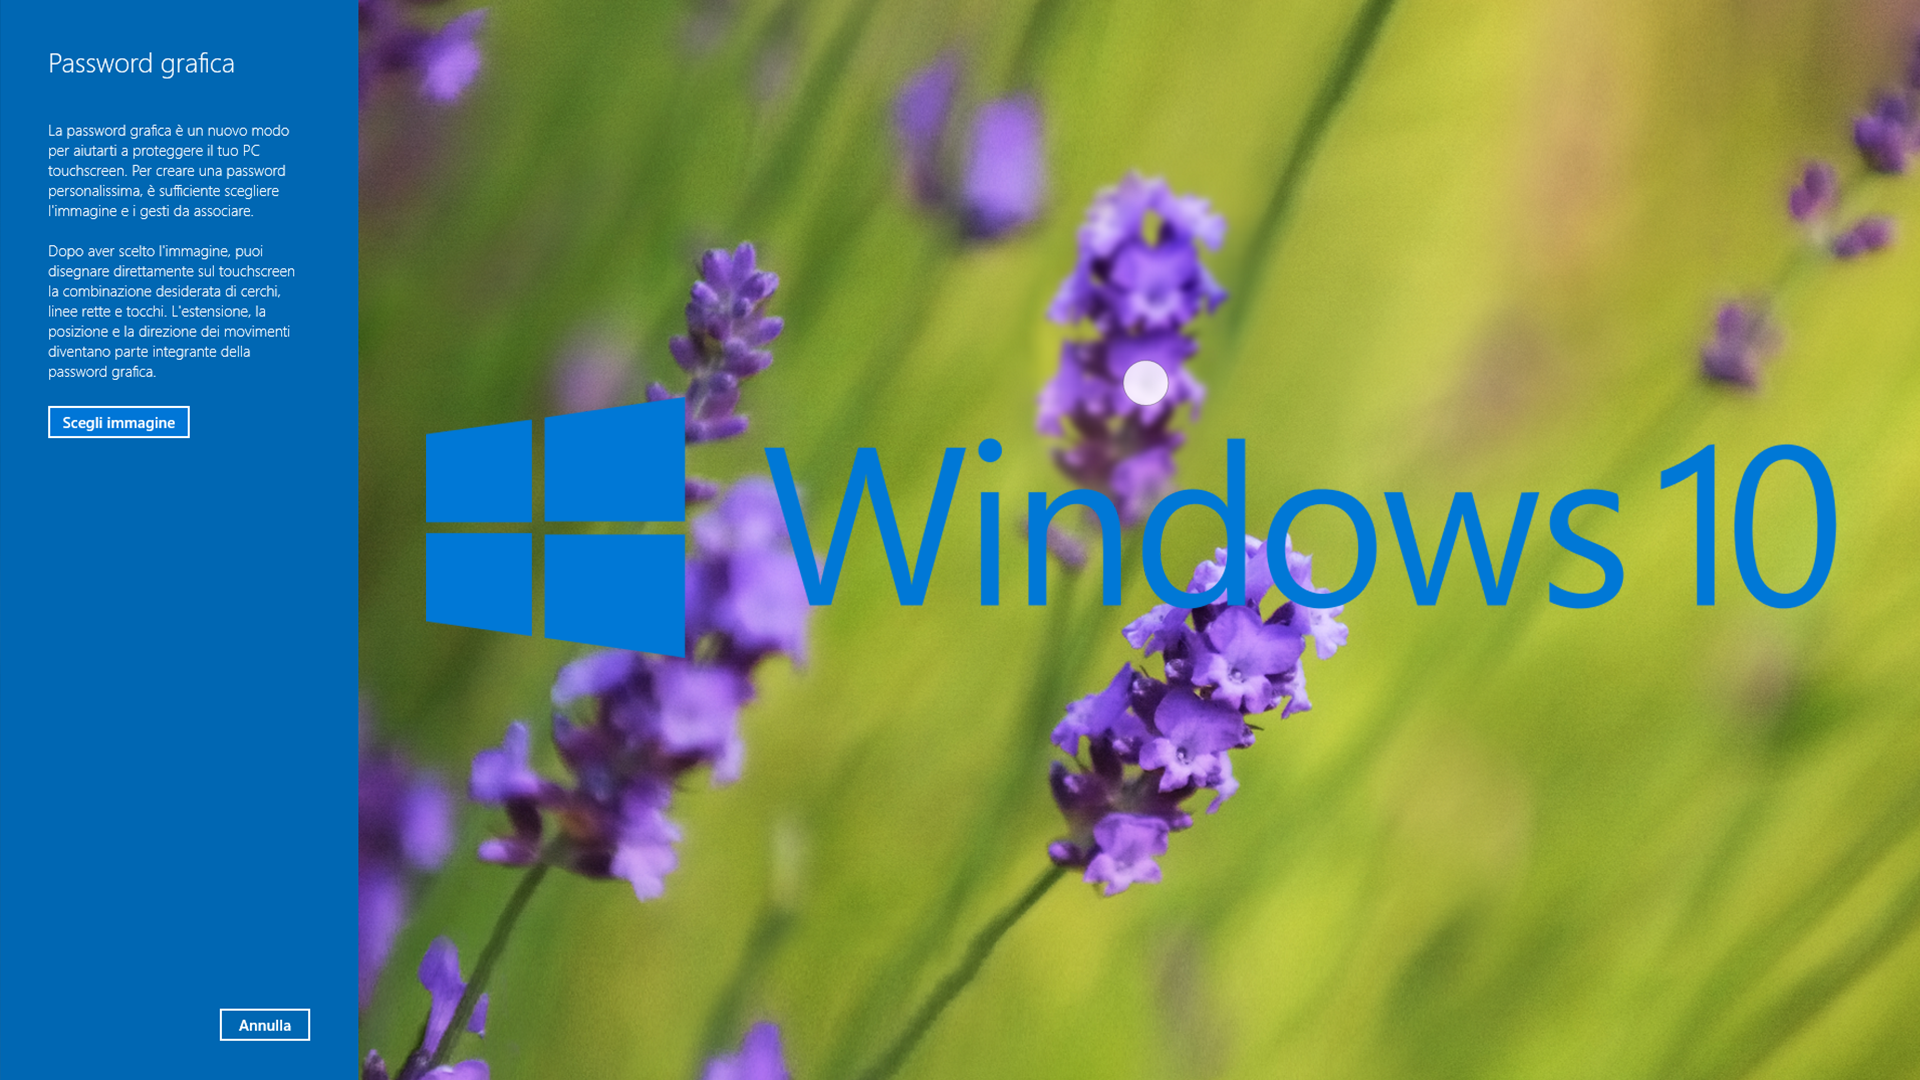 Windows 10: Creare una password grafica per accedere al computer